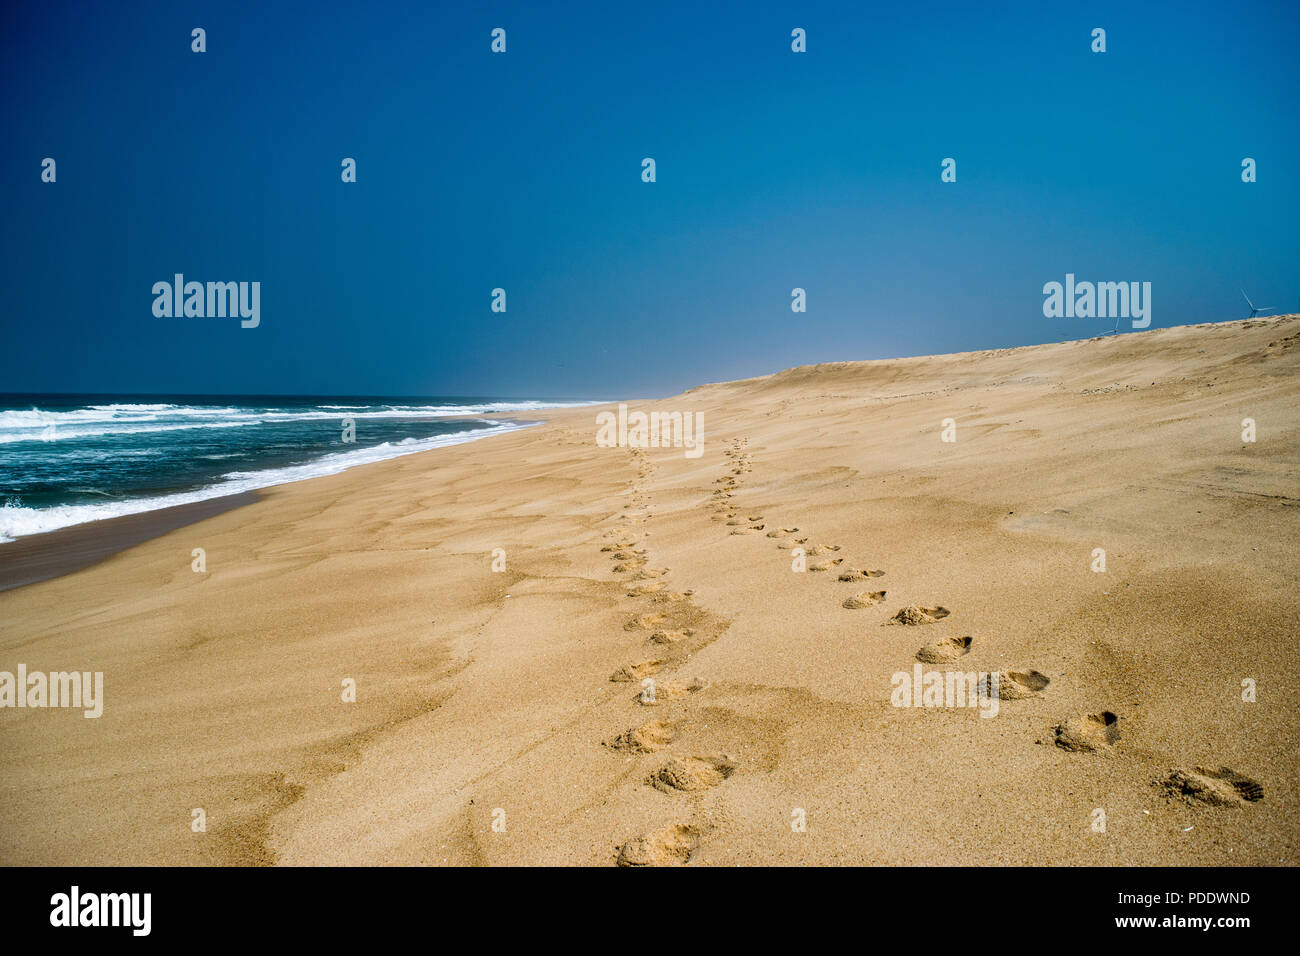 Deux séries d'empreintes de pas dans le sable , sur une plage de sable fin disparaissant dans la distance avec les vagues sous un ciel bleu Banque D'Images